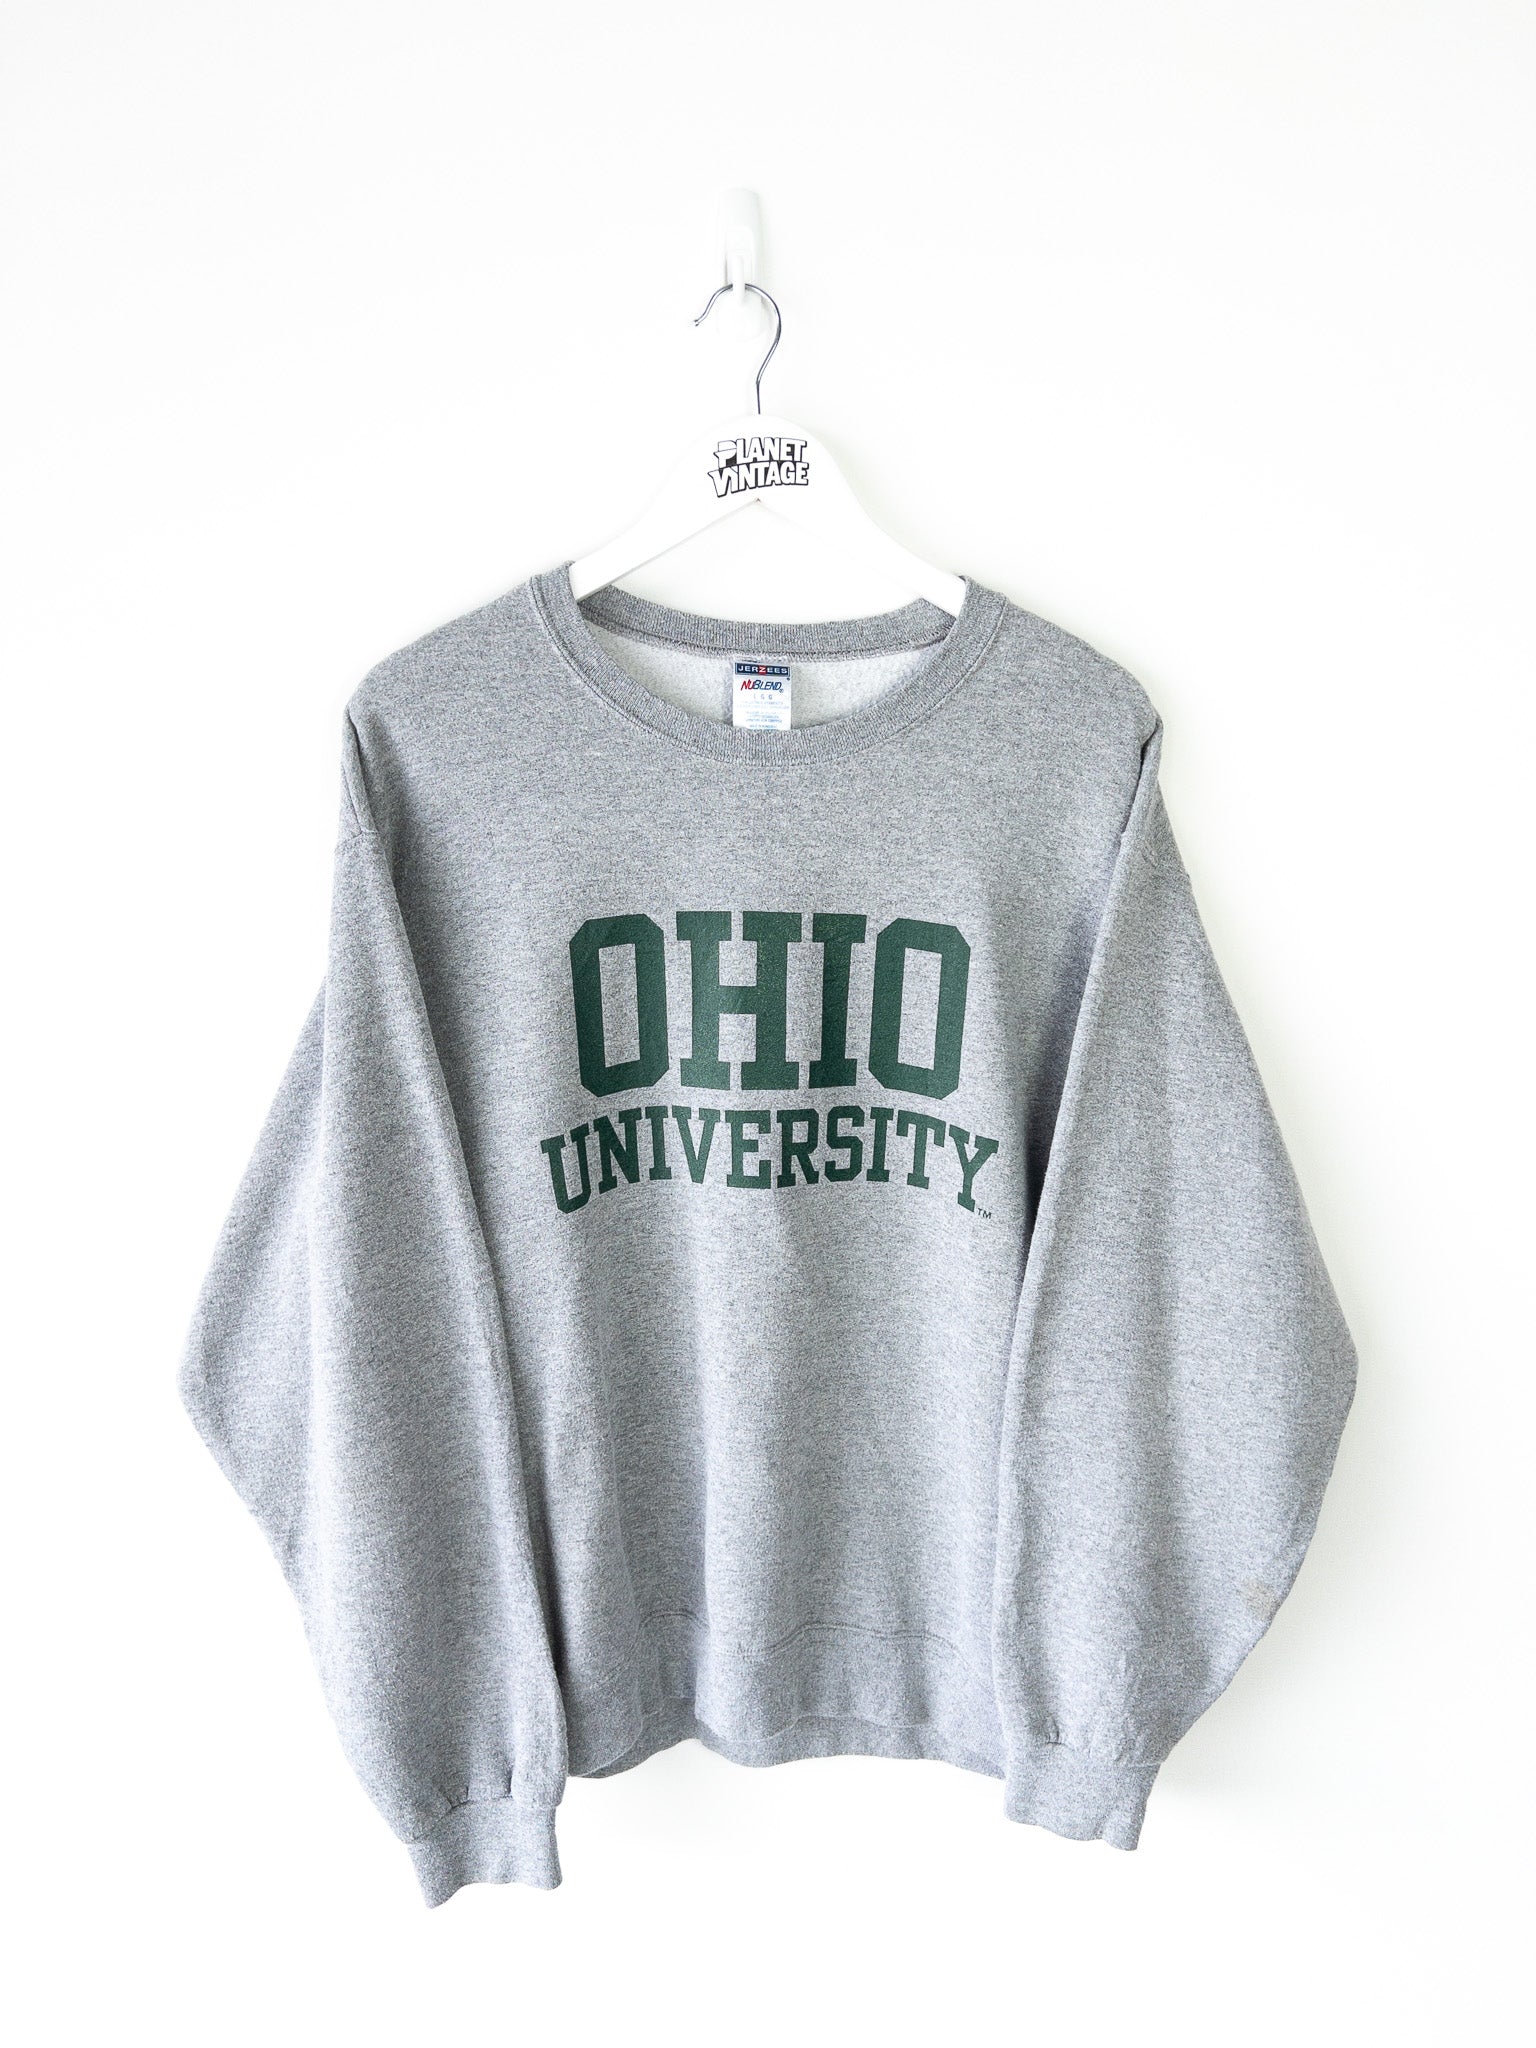 Vintage Ohio University Sweatshirt (L)